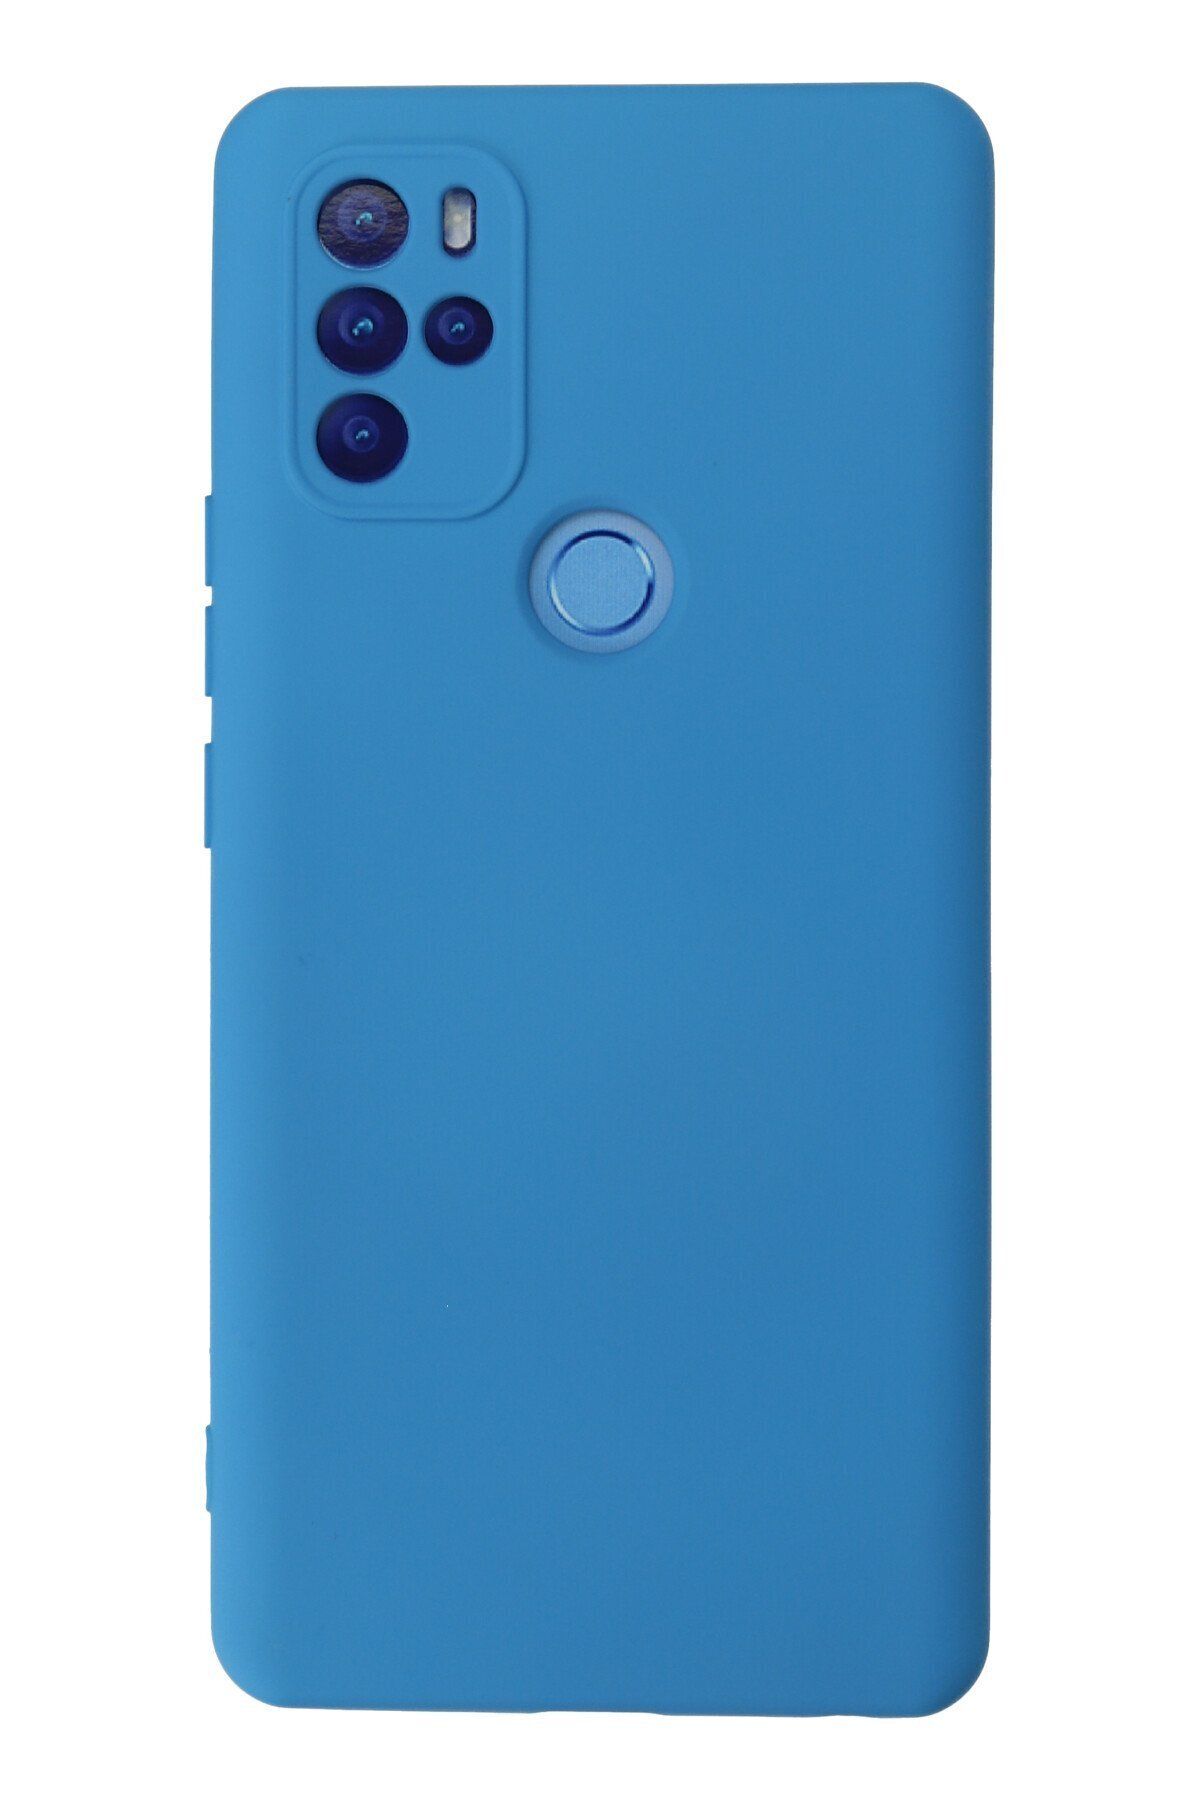 NewFace Omix X500 içi Süet Telefon Kılıfı - Soft Yüzey Kadife Silikon Kapak - Mavi